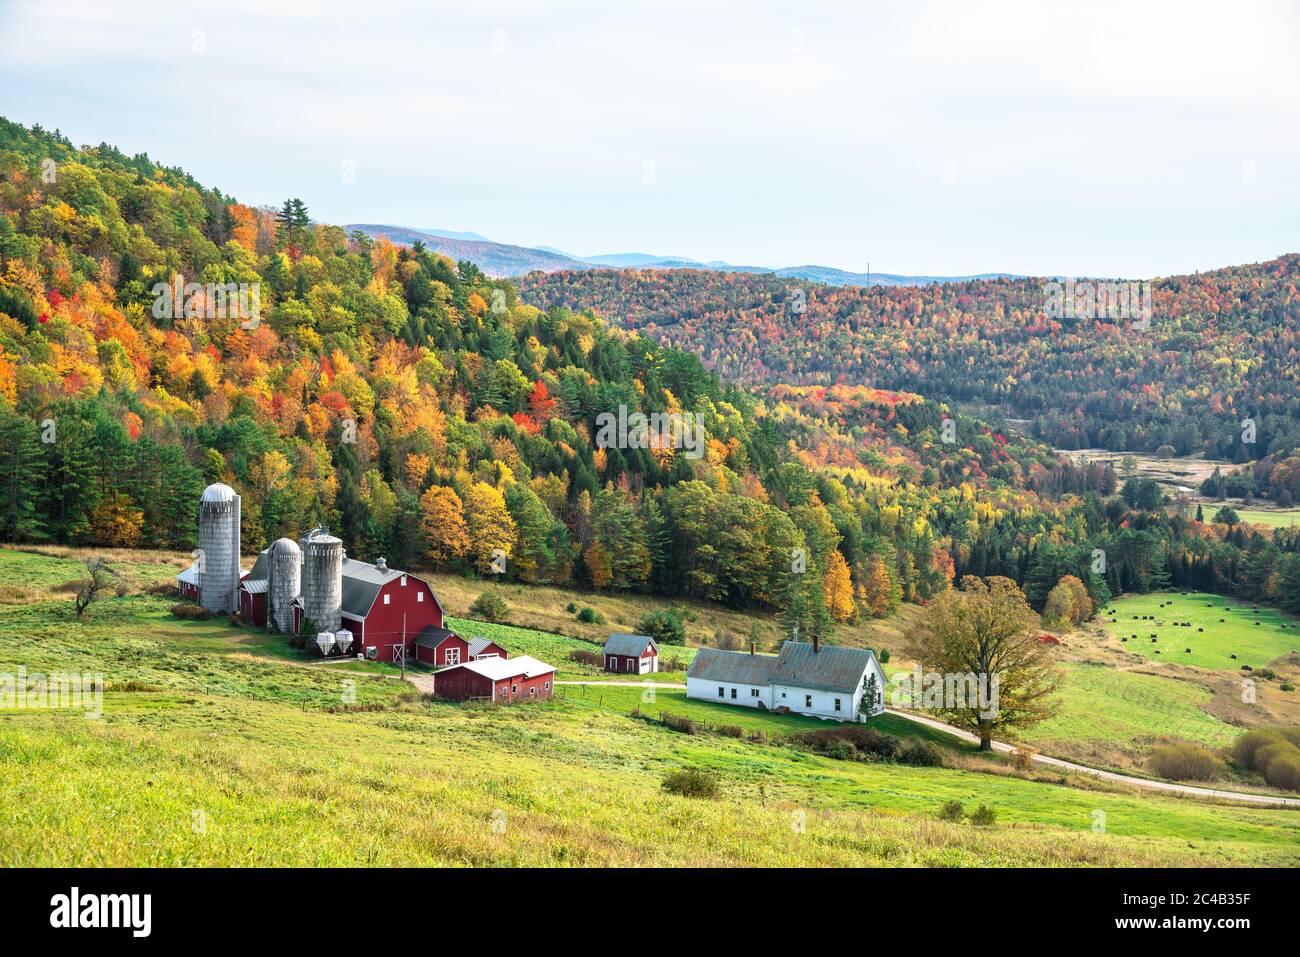 Hügelige ländliche Landschaft mit einem Bauernhof am Fuße eines Gebirges, bedeckt von Laubbäumen auf dem Gipfel des Herbstlaubes an einem bewölkten Herbsttag Stockfoto